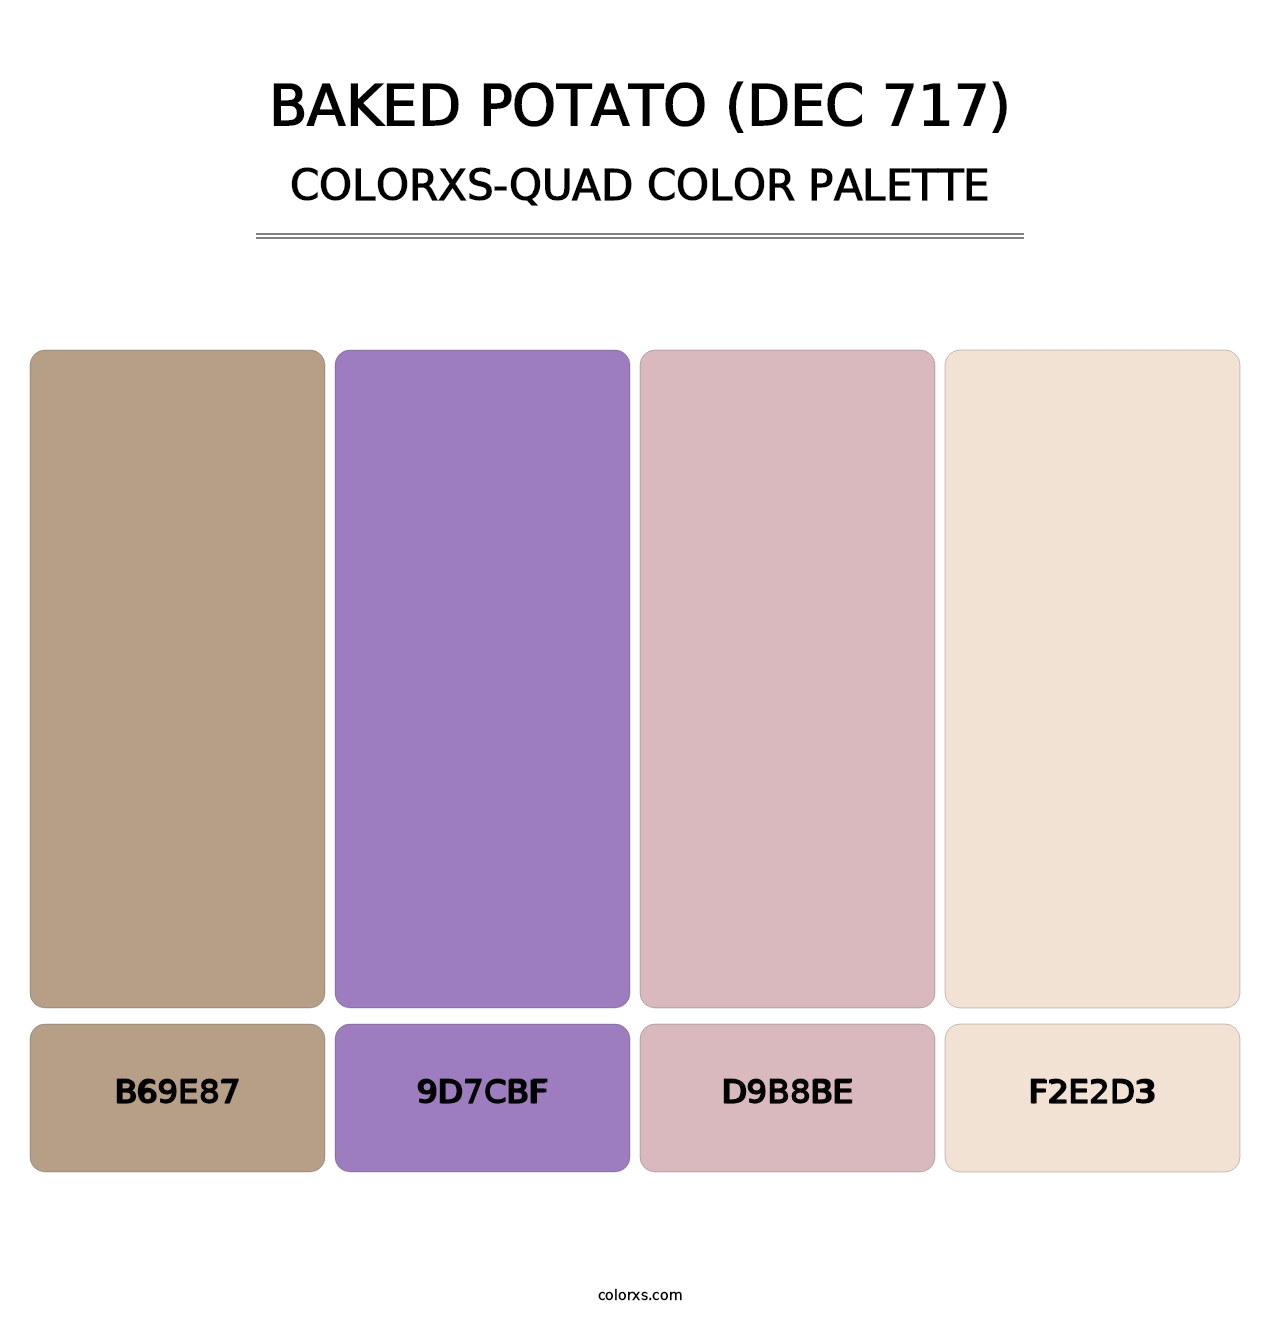 Baked Potato (DEC 717) - Colorxs Quad Palette